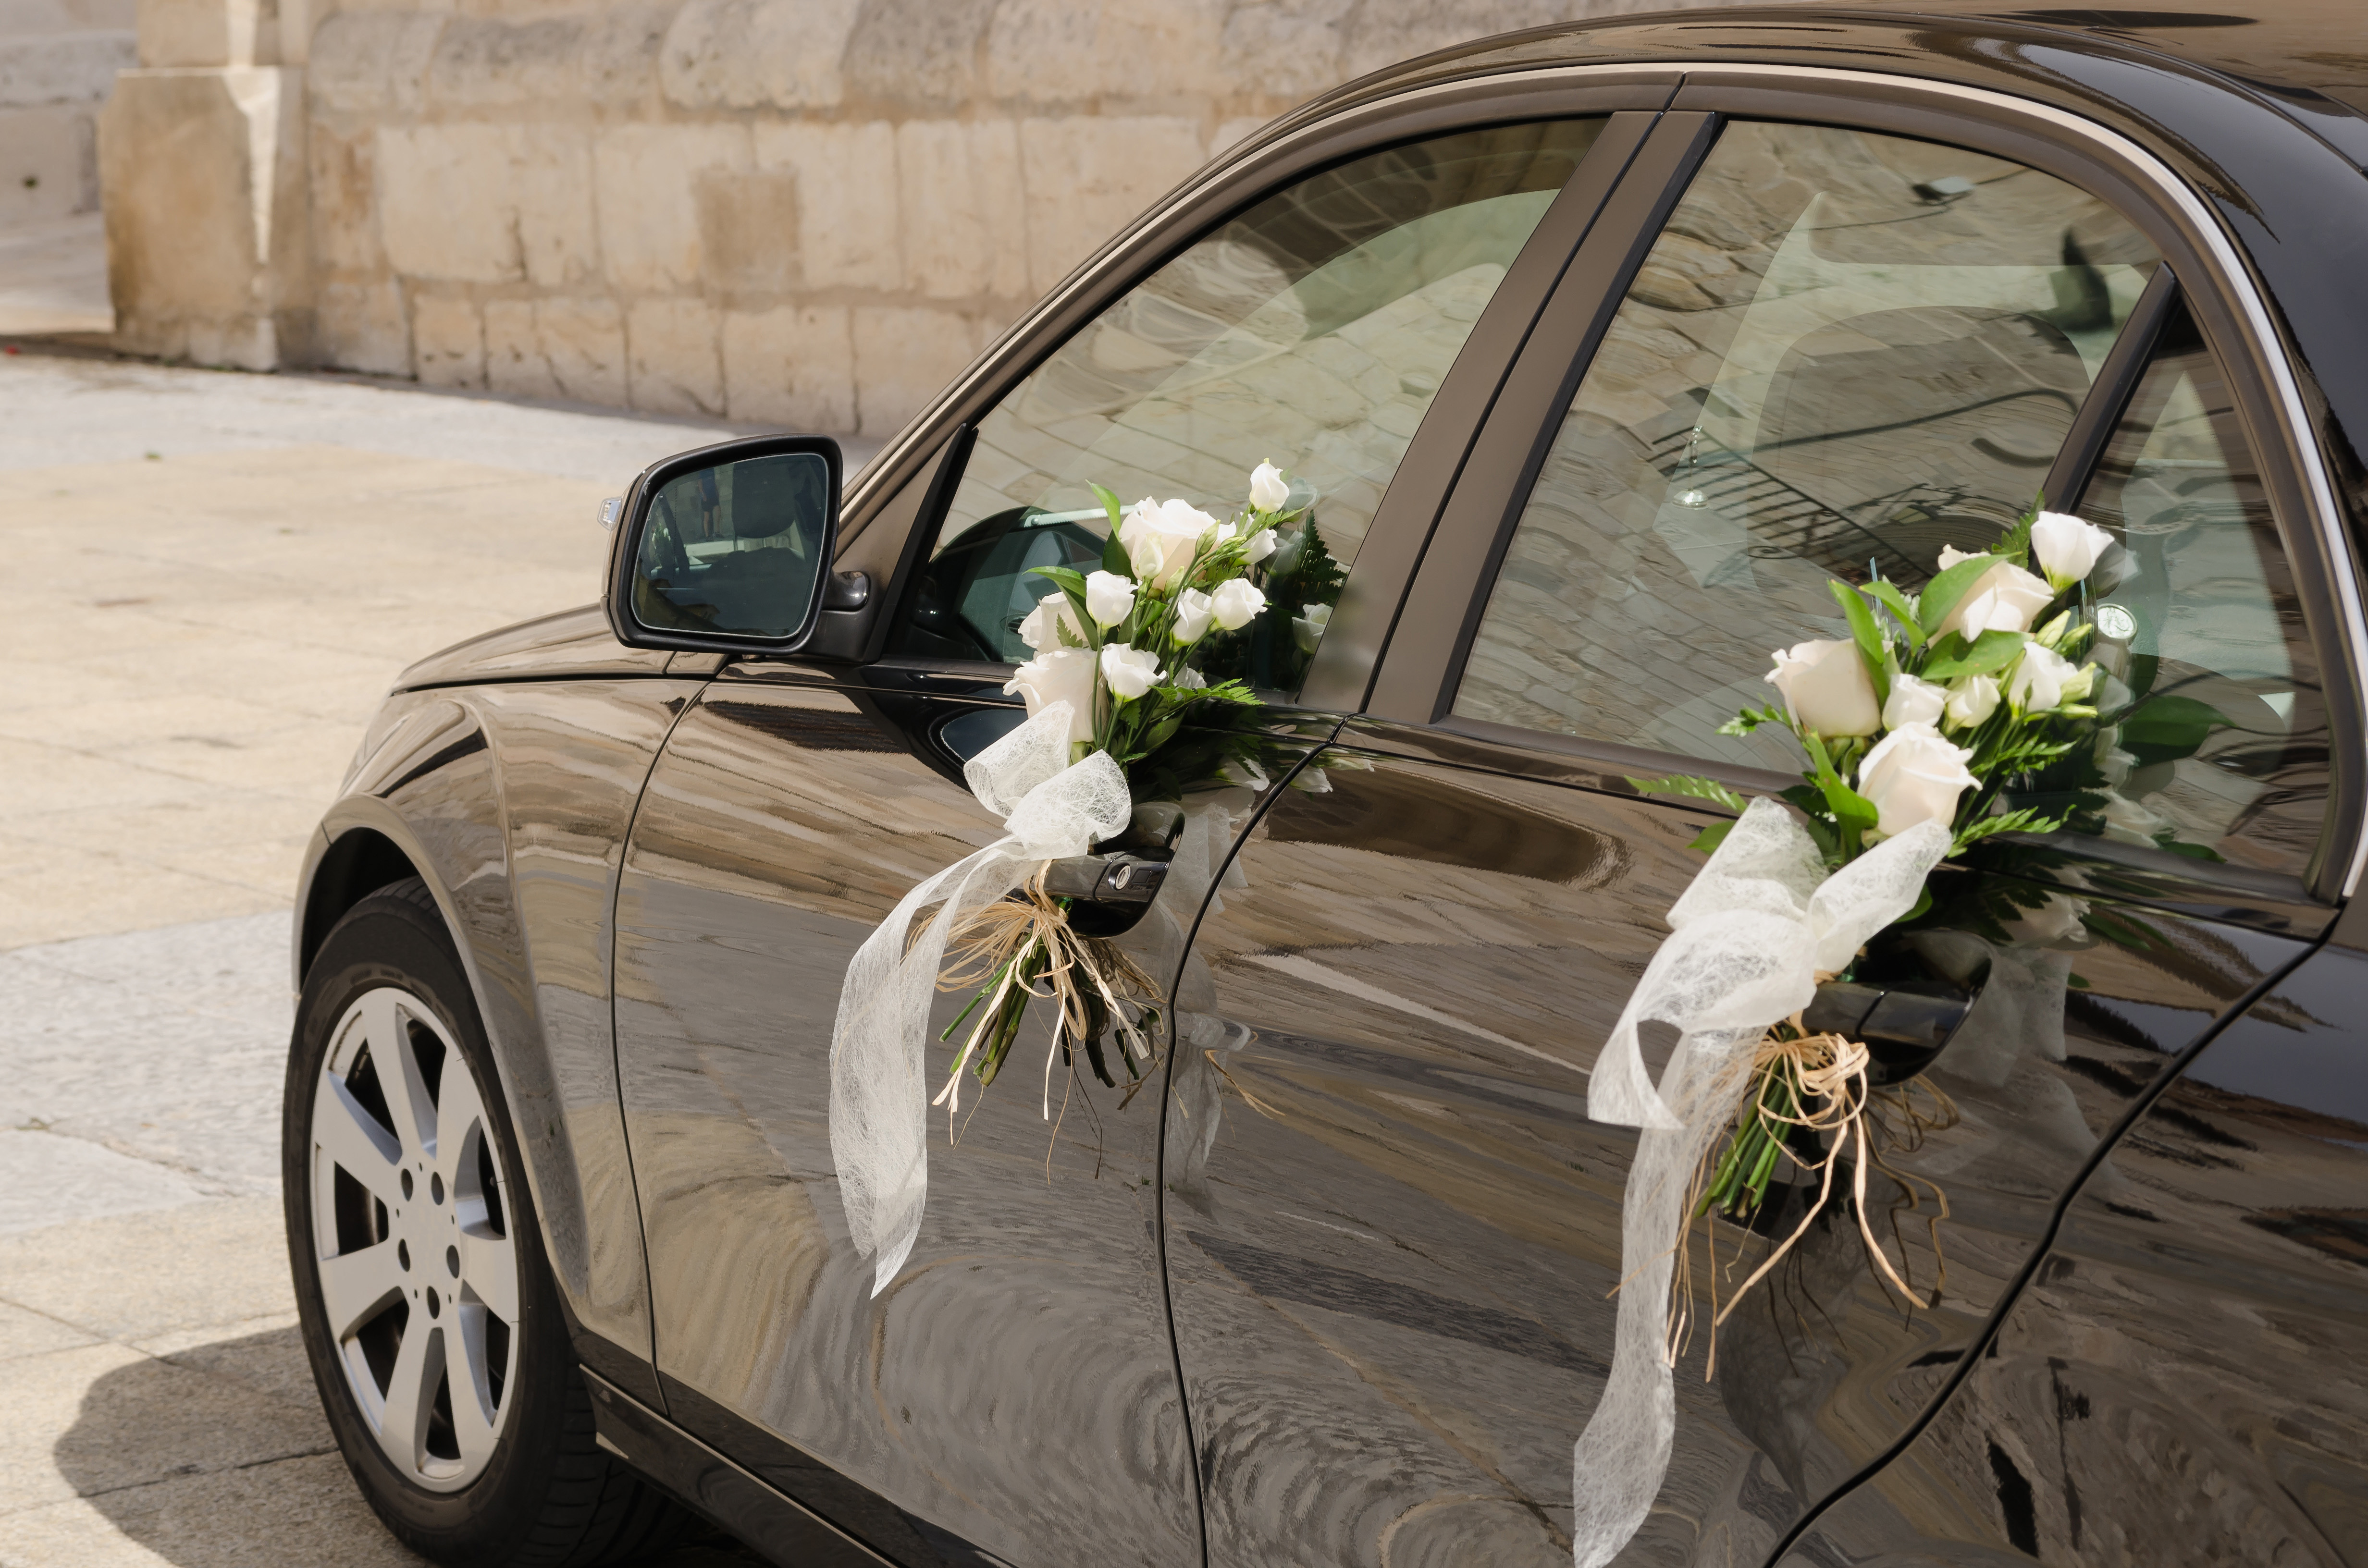 A black wedding car | Source: Shutterstock